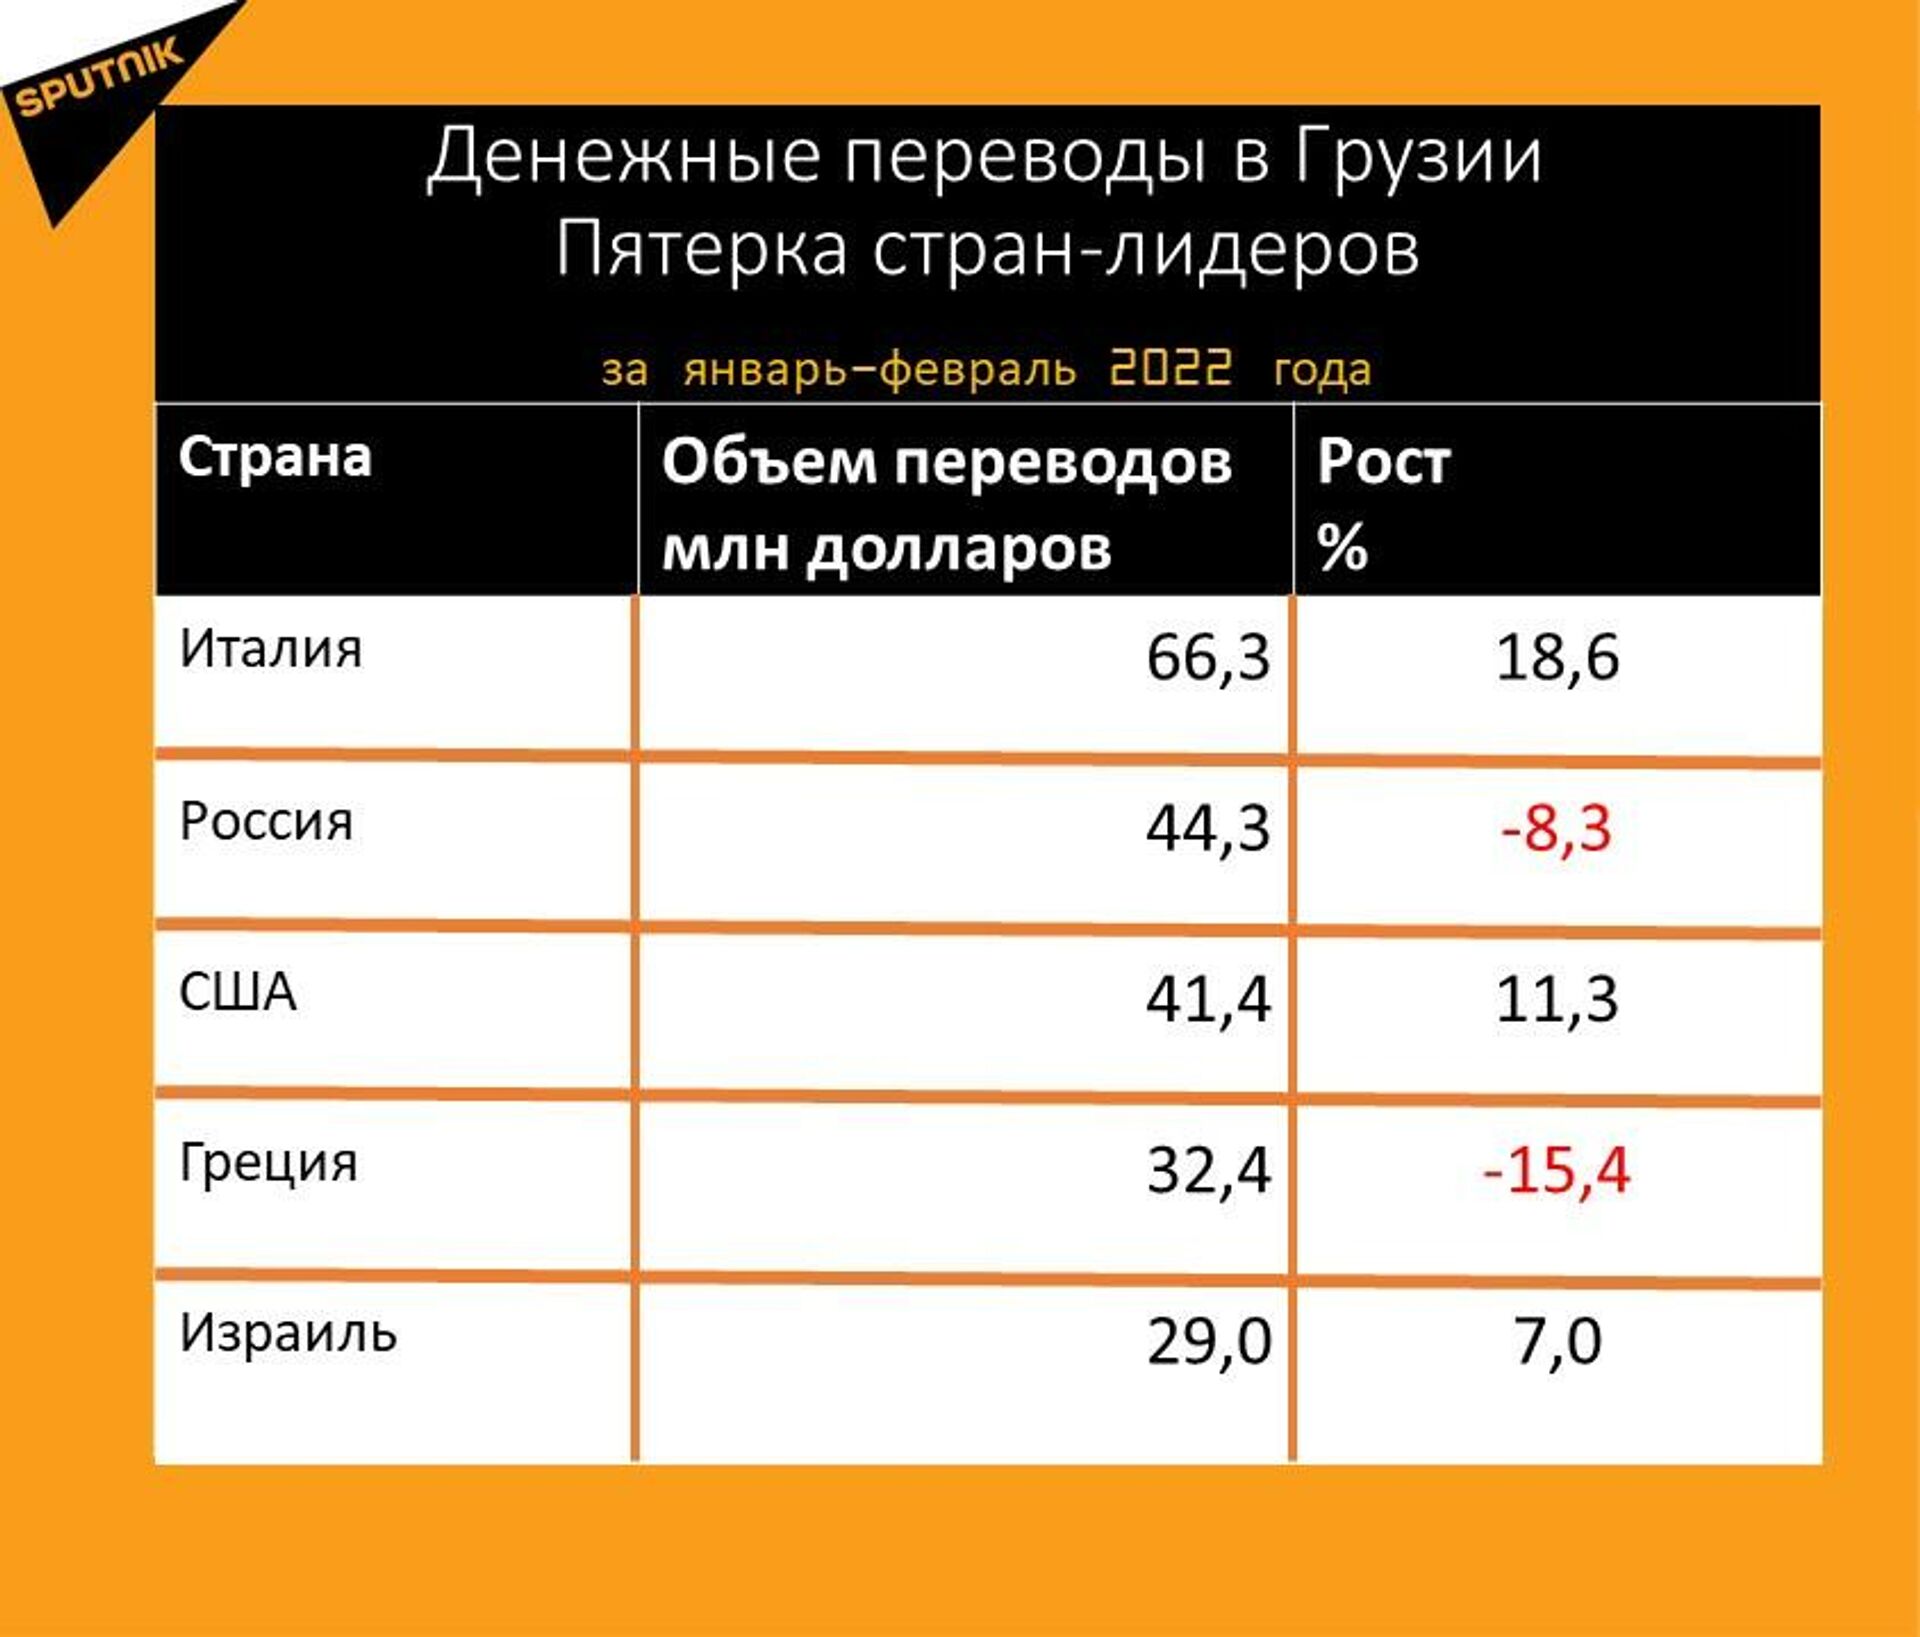 Статистика денежных переводов в Грузию за январь-февраль 2022 года - Sputnik Грузия, 1920, 16.03.2022